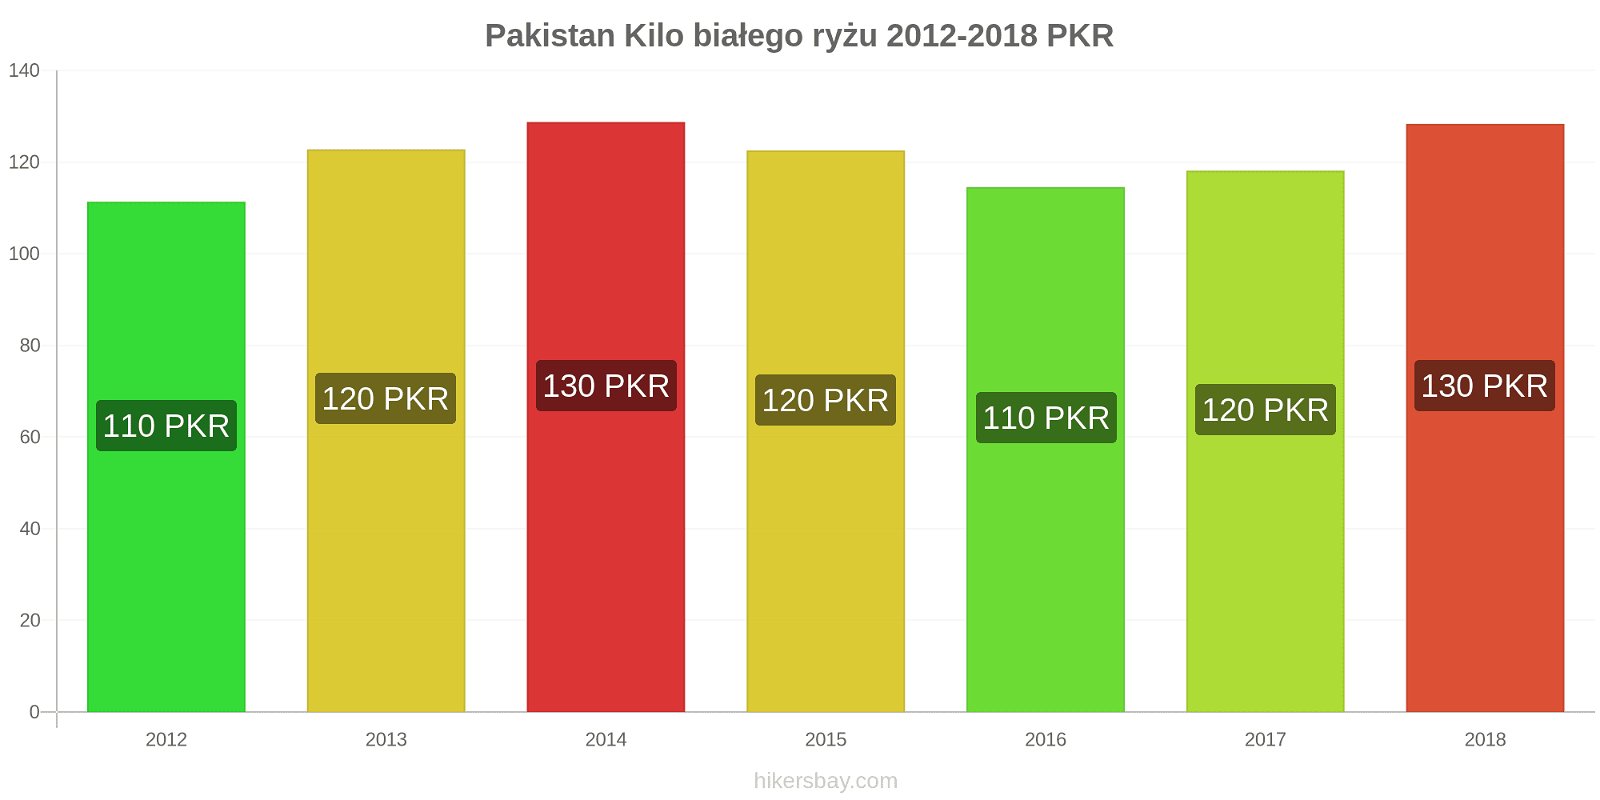 Pakistan zmiany cen Kilo białego ryżu hikersbay.com